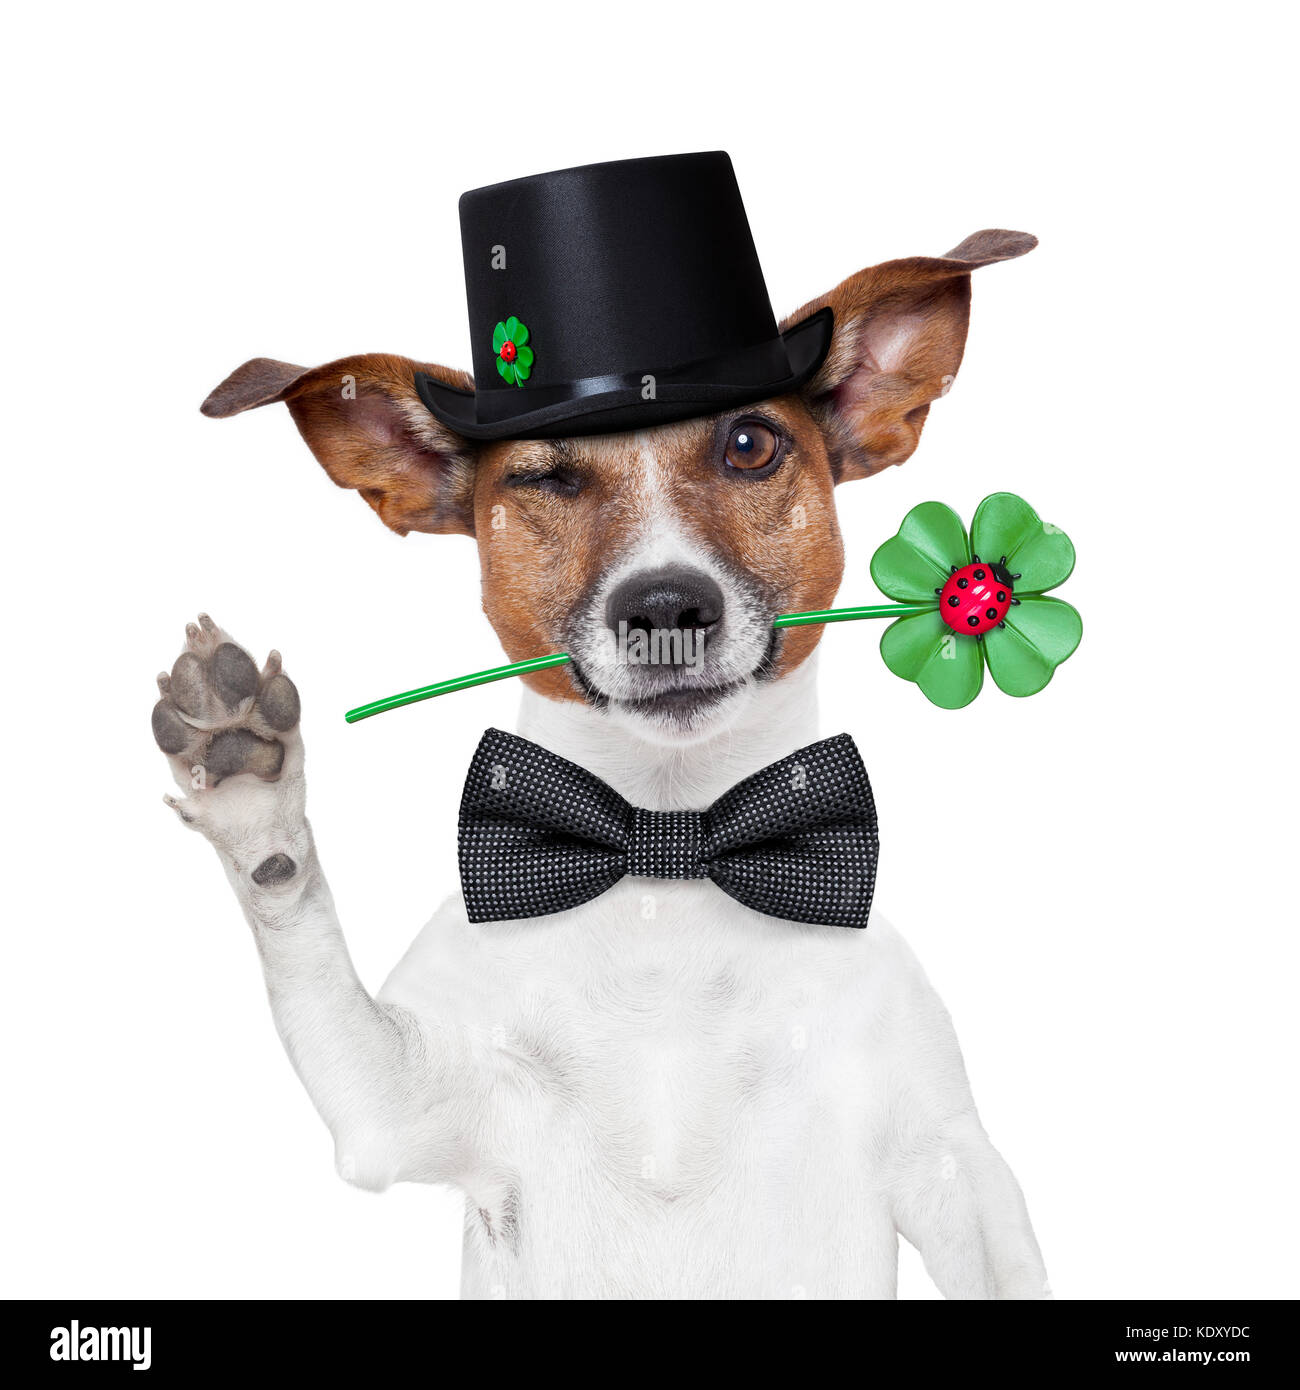 Viel Glück Schornsteinfeger Hund mit Hut und Klee Stockfotografie - Alamy